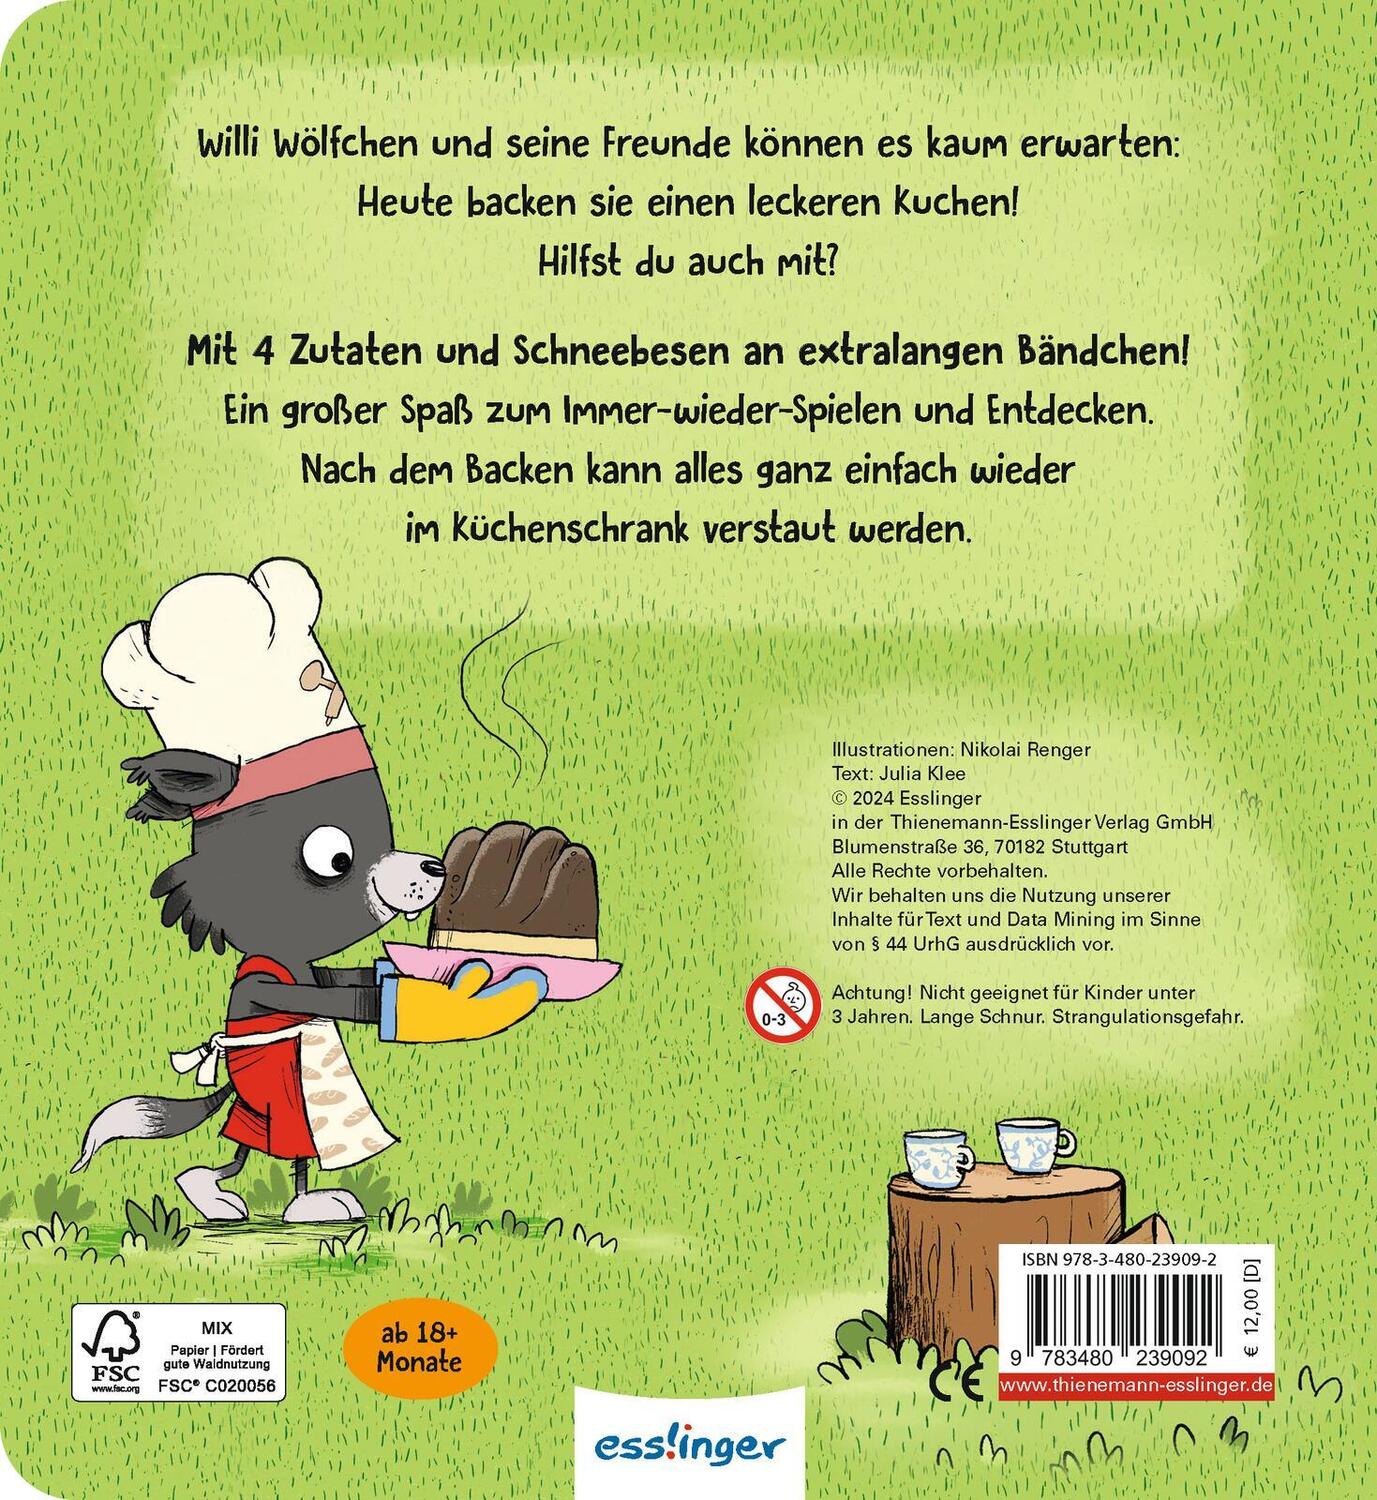 Rückseite: 9783480239092 | Willi Wölfchen: Wir backen einen Kuchen! | Julia Klee | Buch | 10 S.